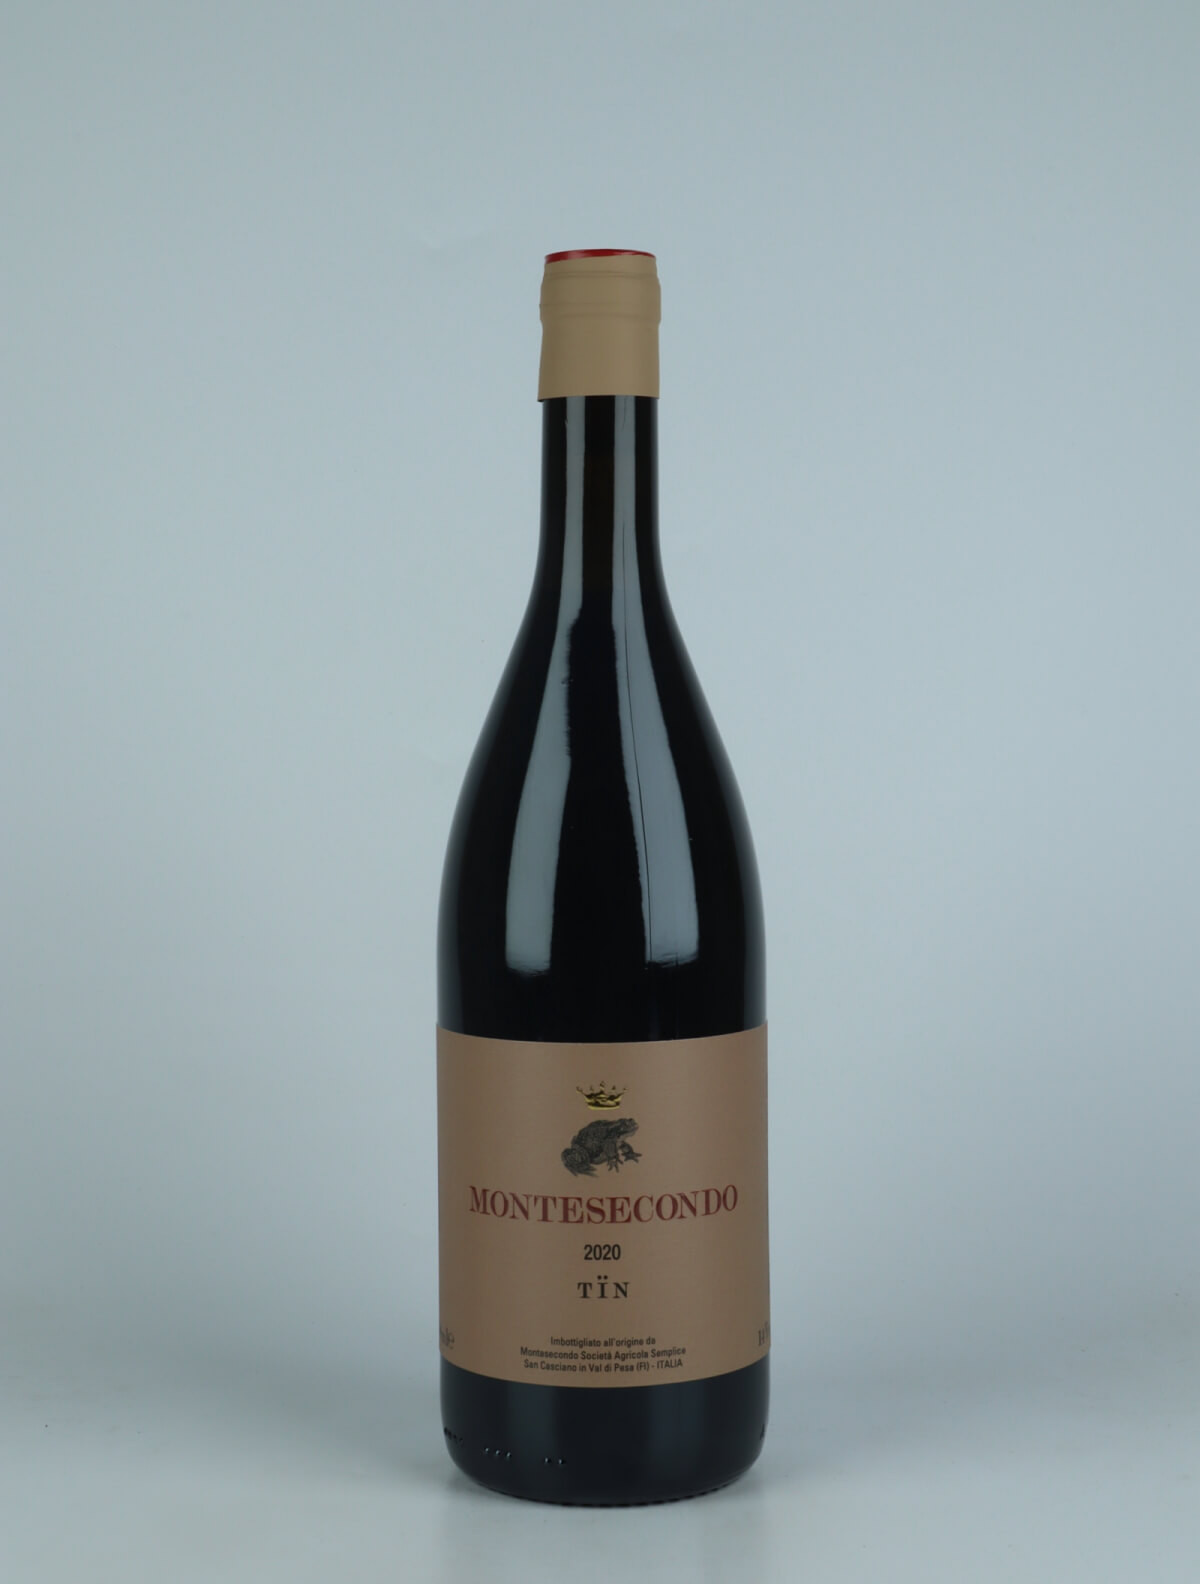 En flaske 2020 Tïn - Sangiovese Rødvin fra Montesecondo, Toscana i Italien